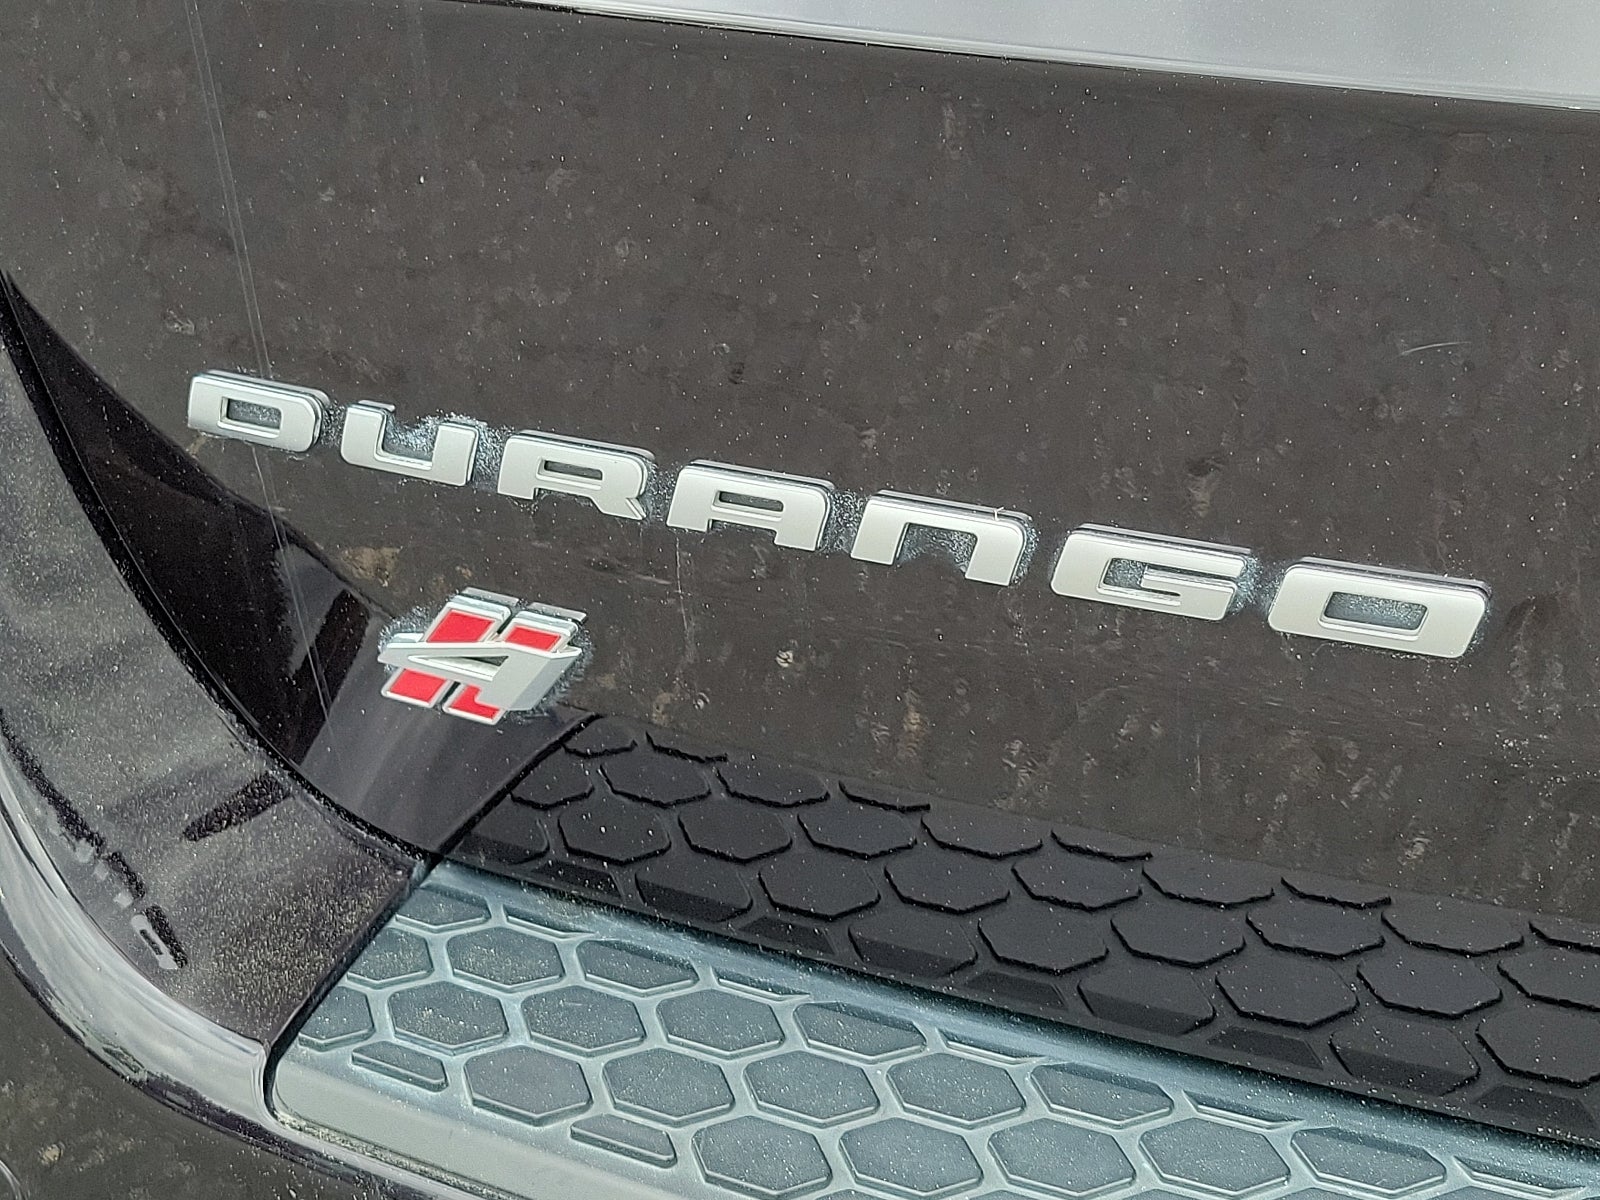 2019 Dodge Durango Citadel Anodized Platinum